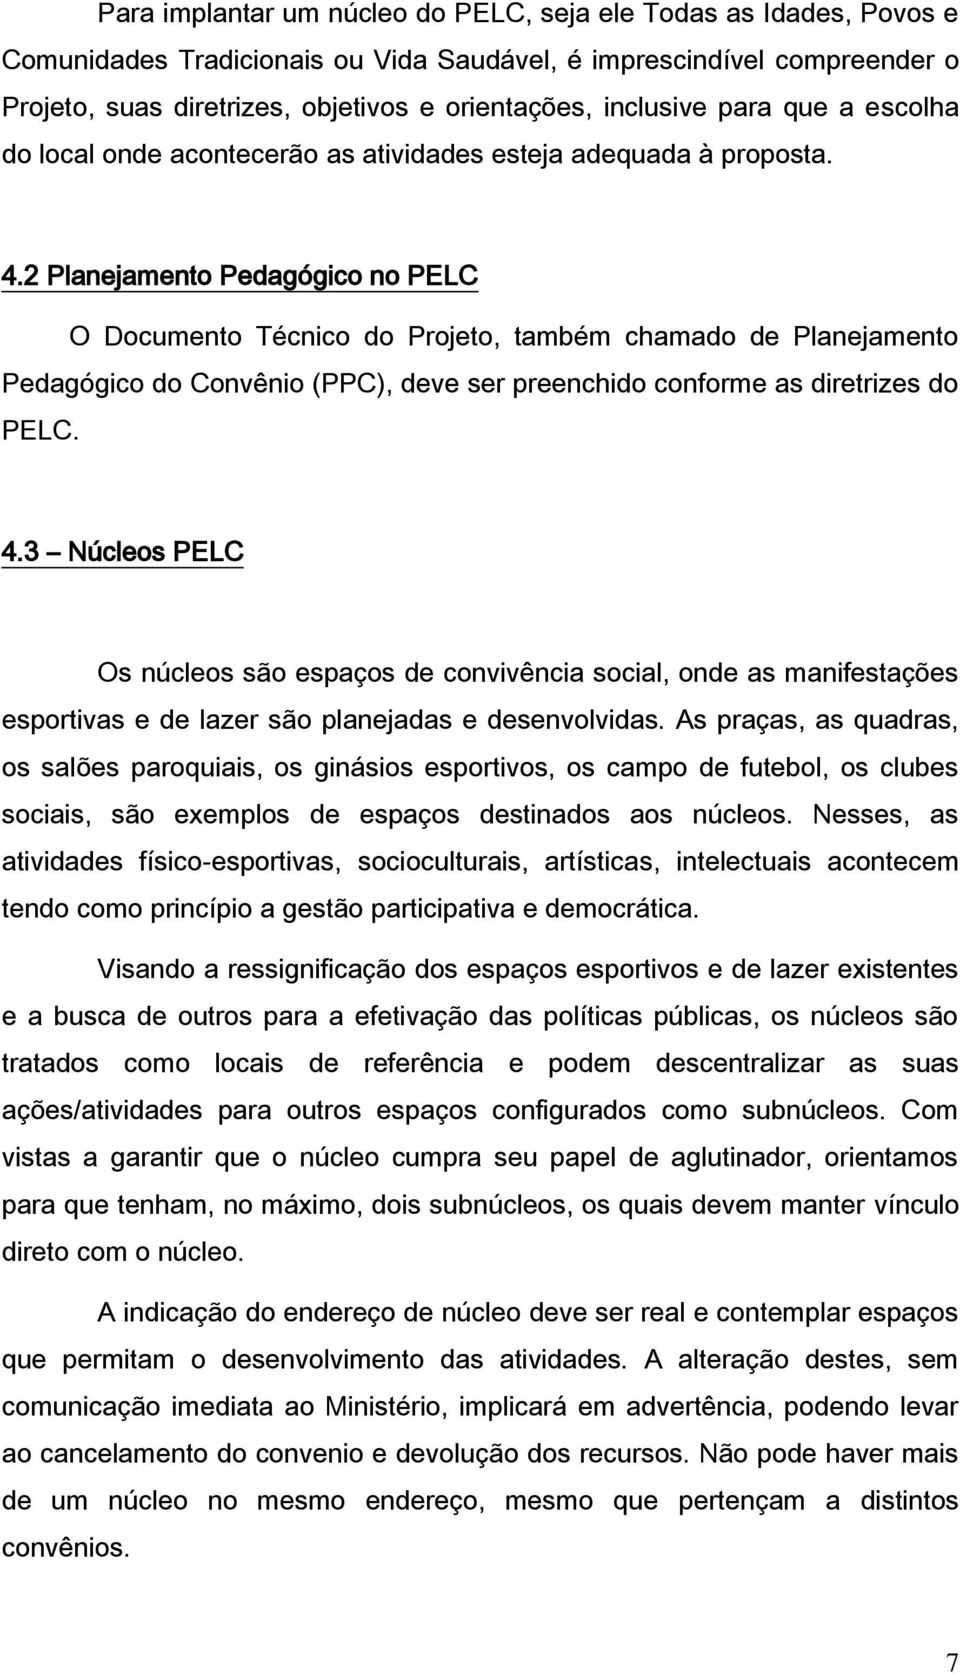 2 Planejamento Pedagógico no PELC O Documento Técnico do Projeto, também chamado de Planejamento Pedagógico do Convênio (PPC), deve ser preenchido conforme as diretrizes do PELC. 4.